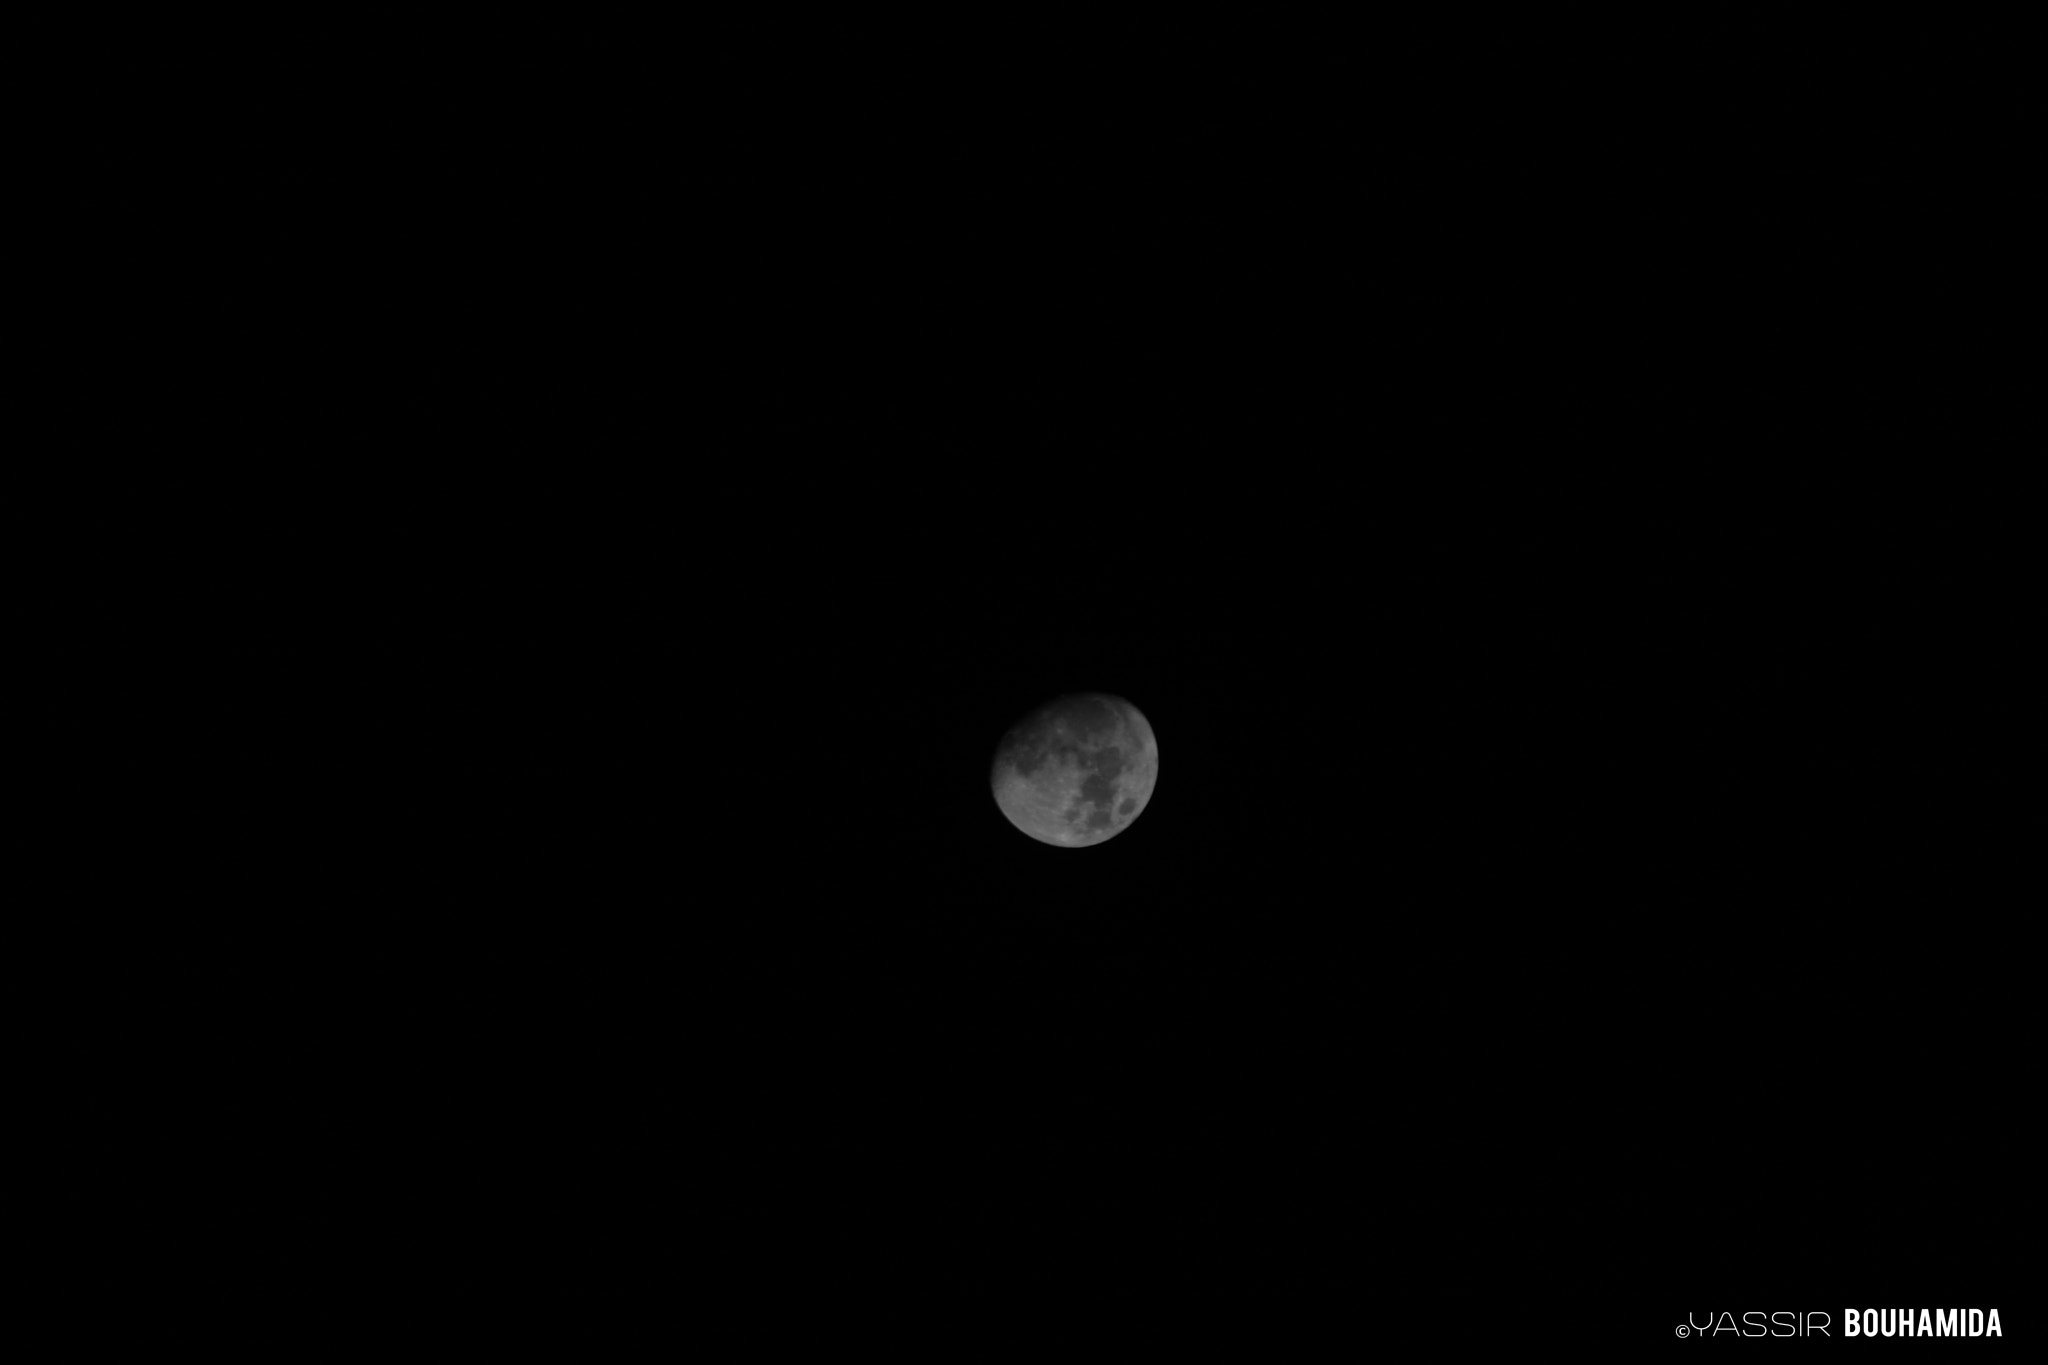 Canon EOS 40D sample photo. La lune pour le moment  :) photography